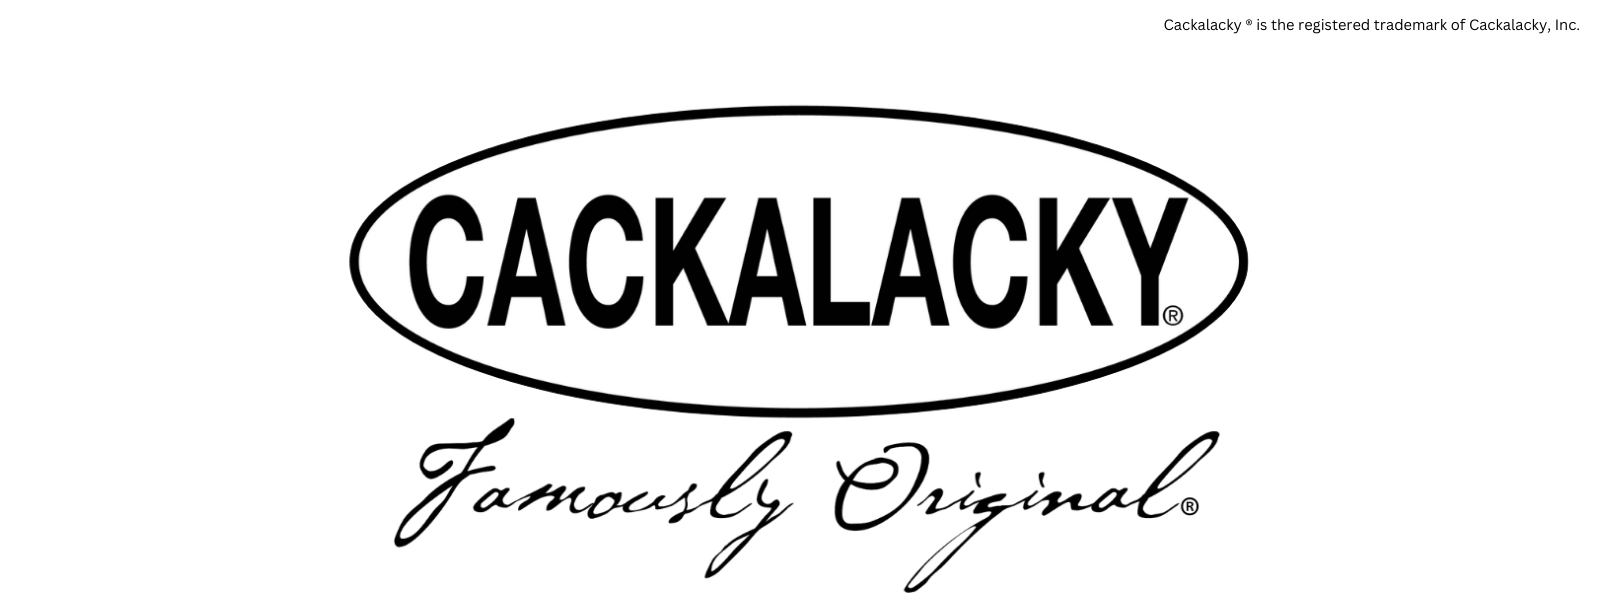 Cackalacky Homepage